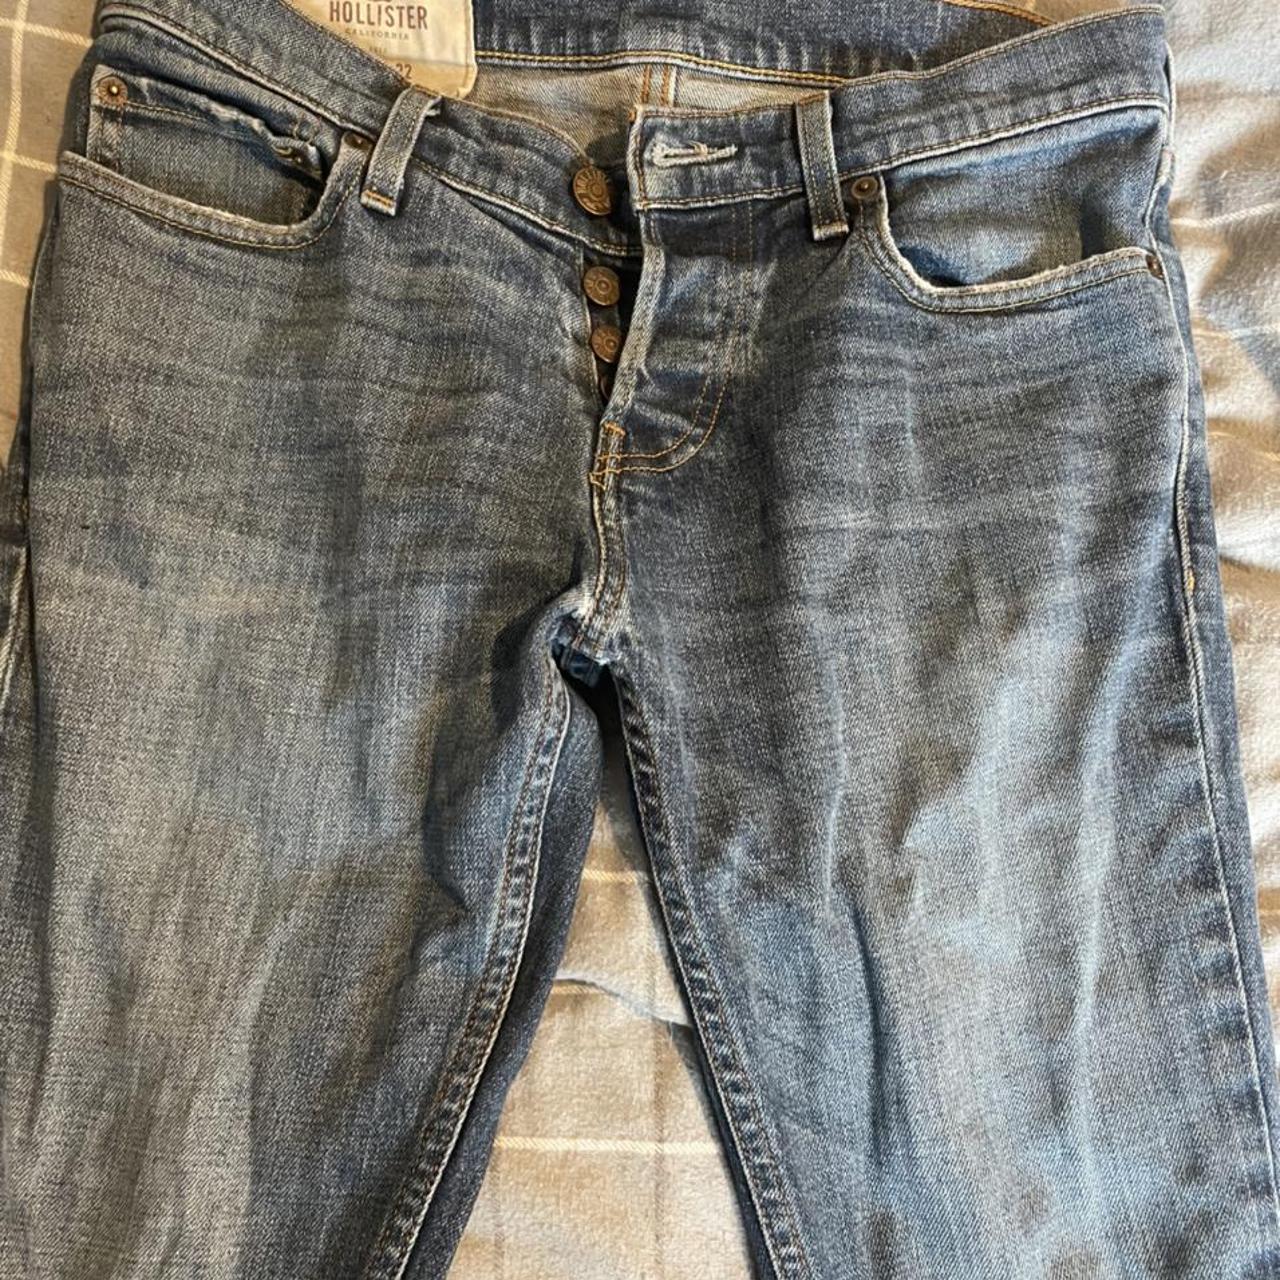 Hollister skinny jeans - Depop